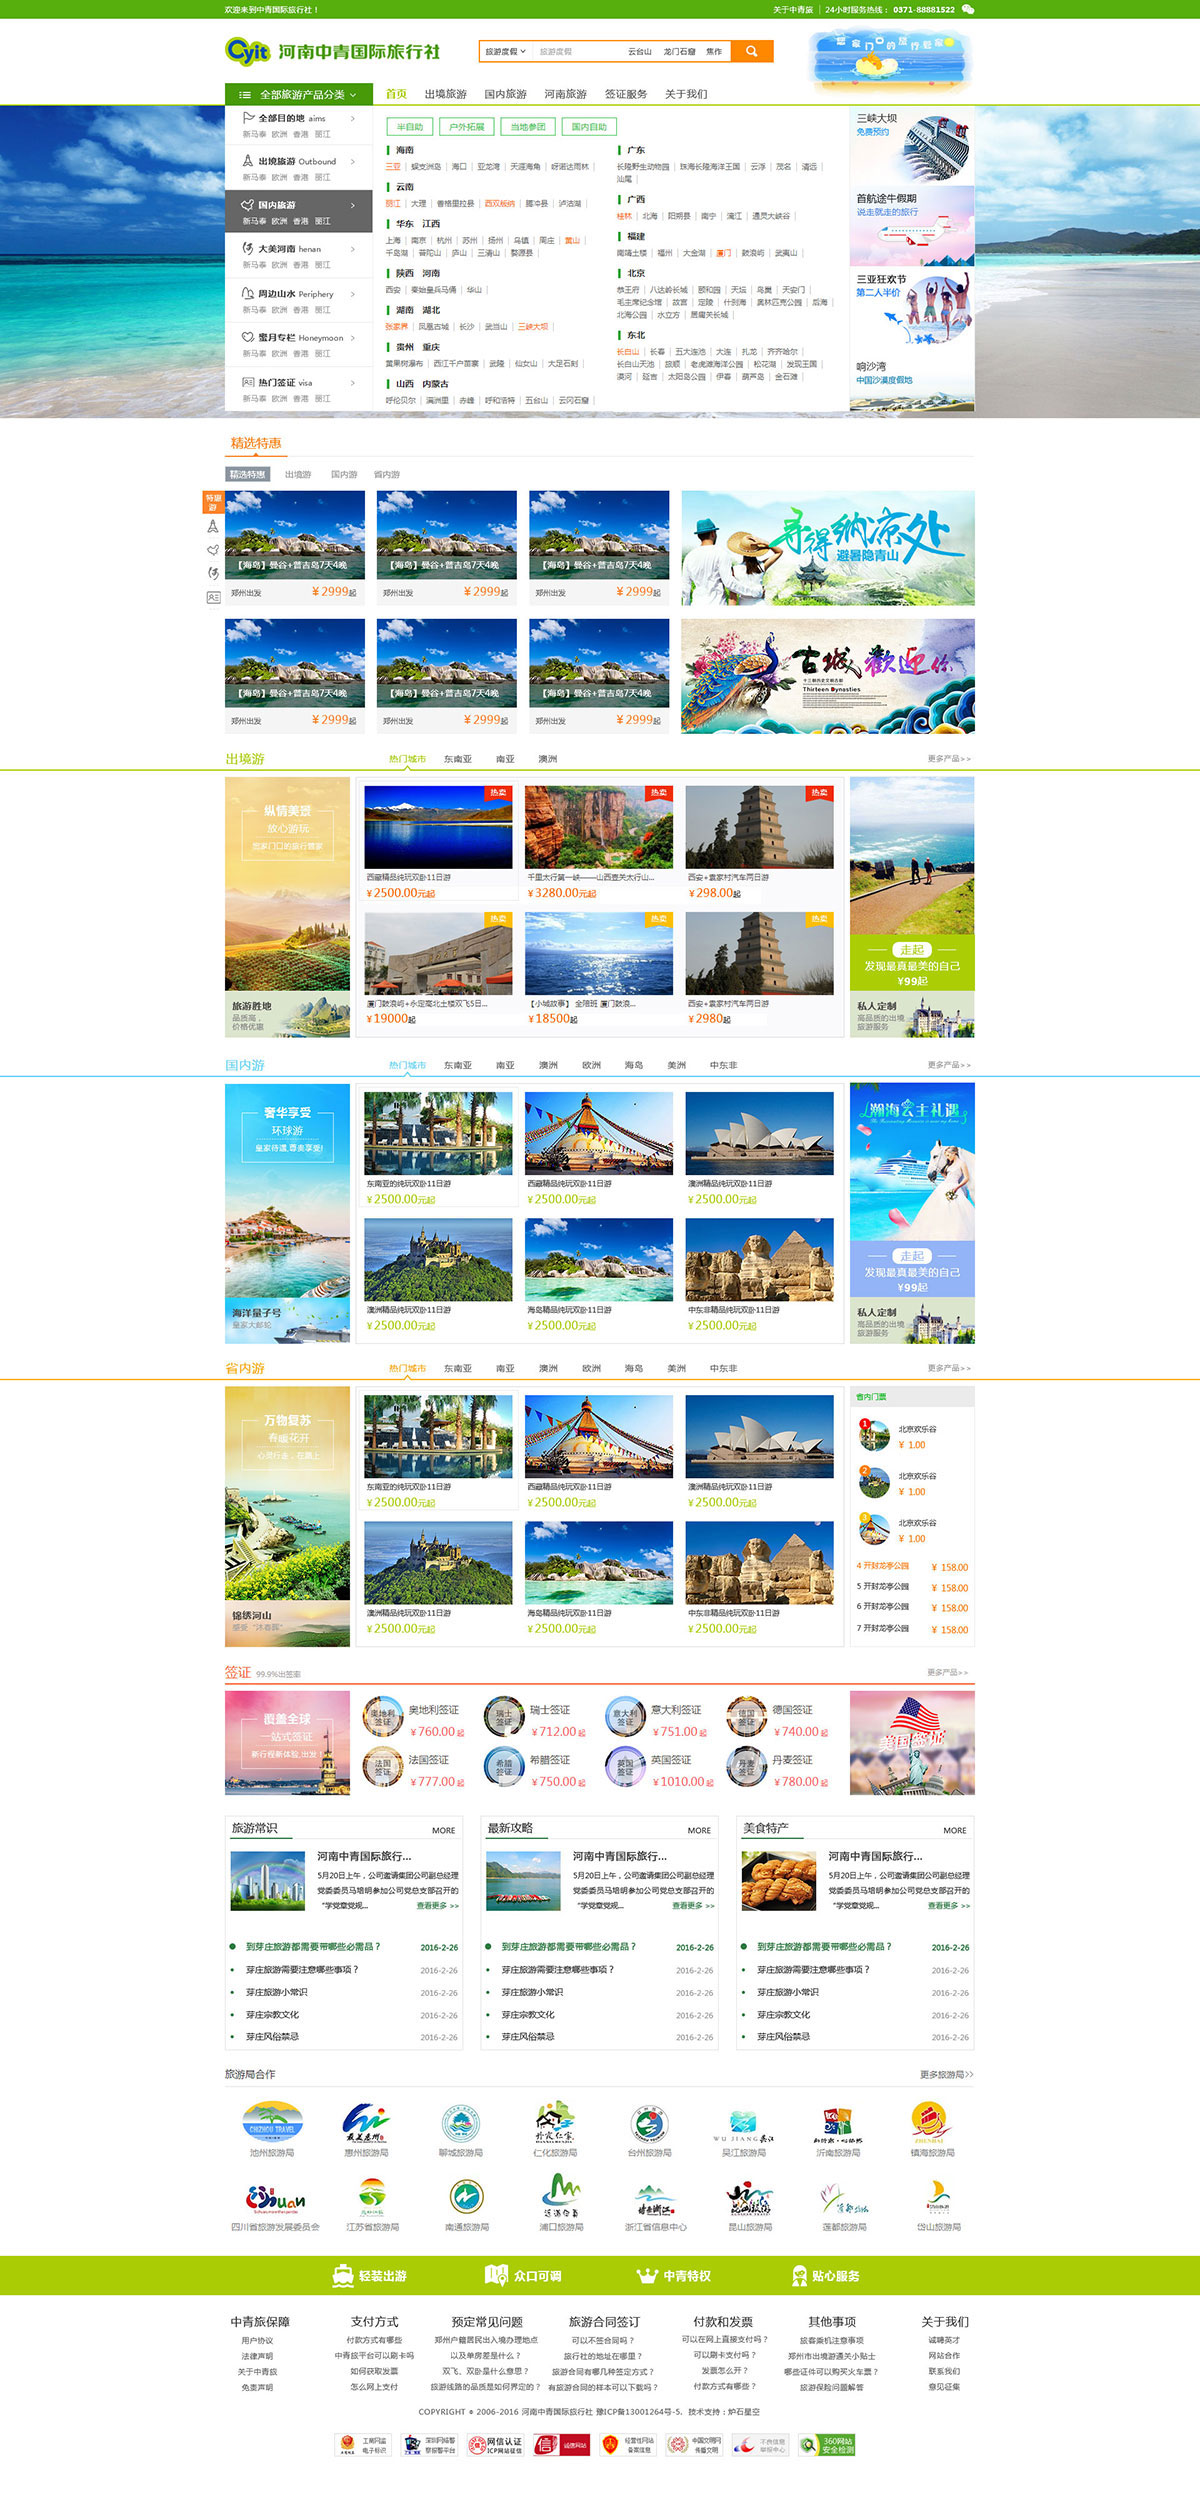 中青旅行社旅游网站景点展示系统